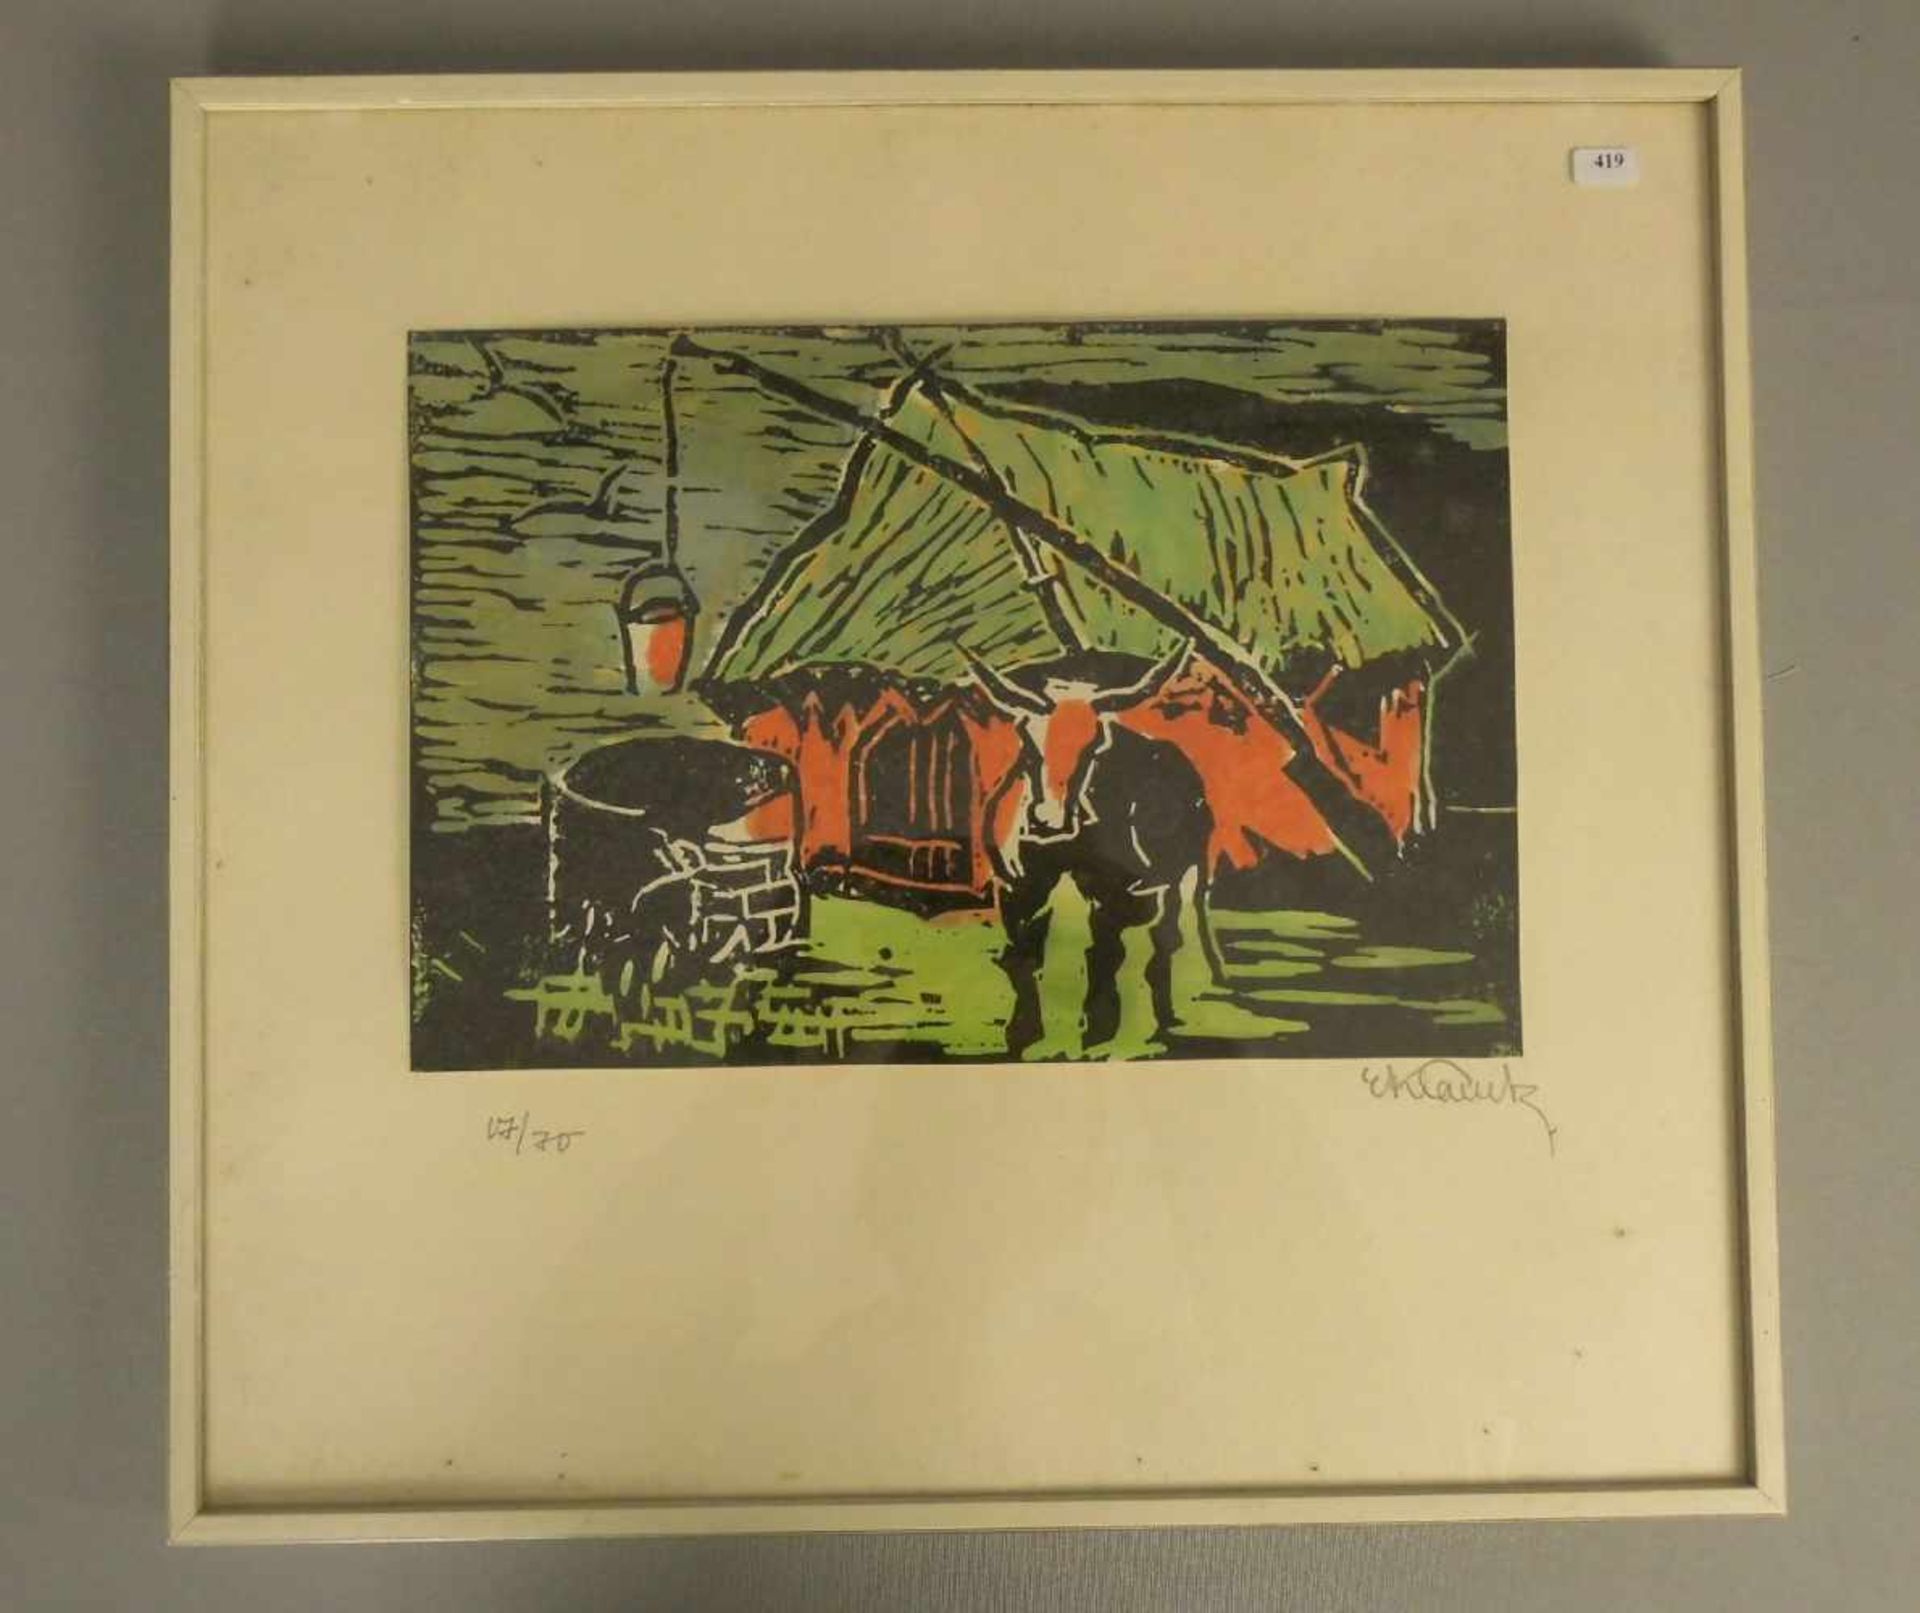 KLAUCK, ERIKA (Trier 1900-1970 Diepholz), handkolorierter Linolschnitt: "Bauernkate mit